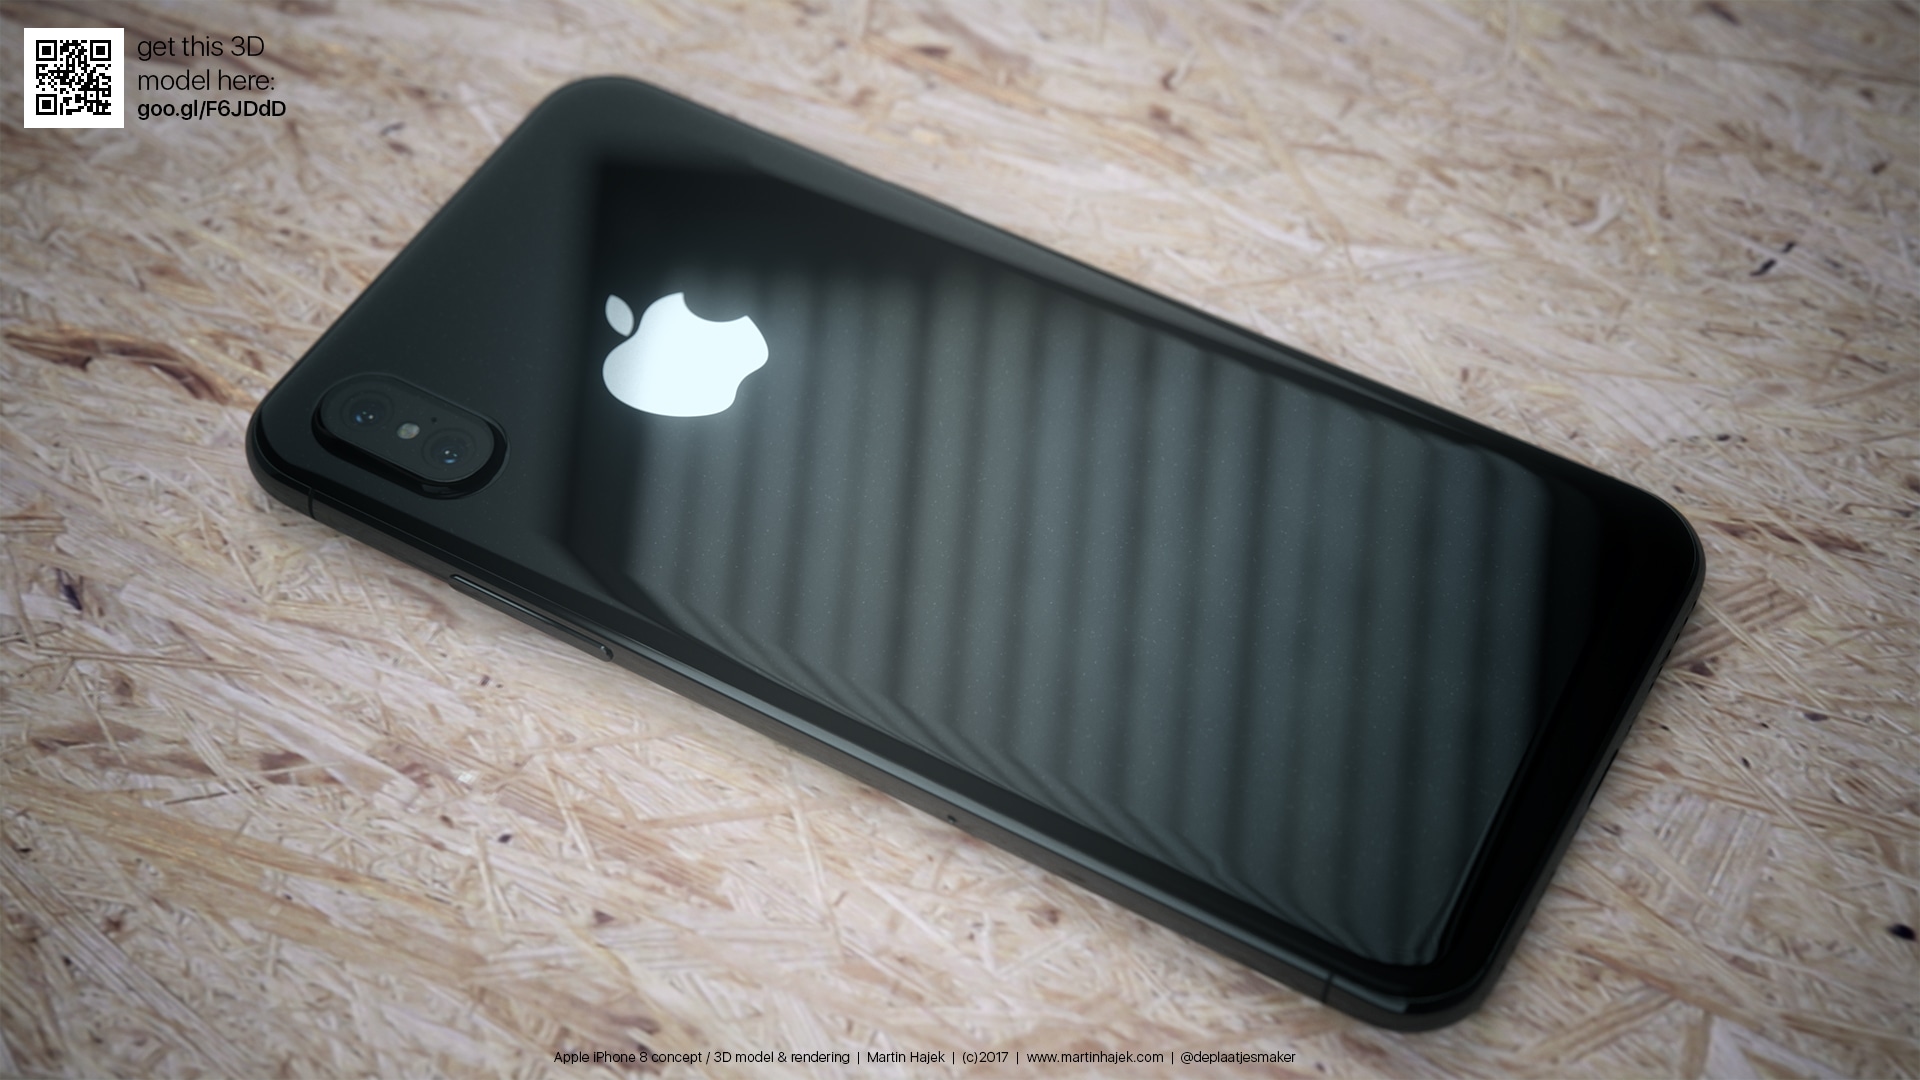 Mockup/render do "iPhone 8" preto